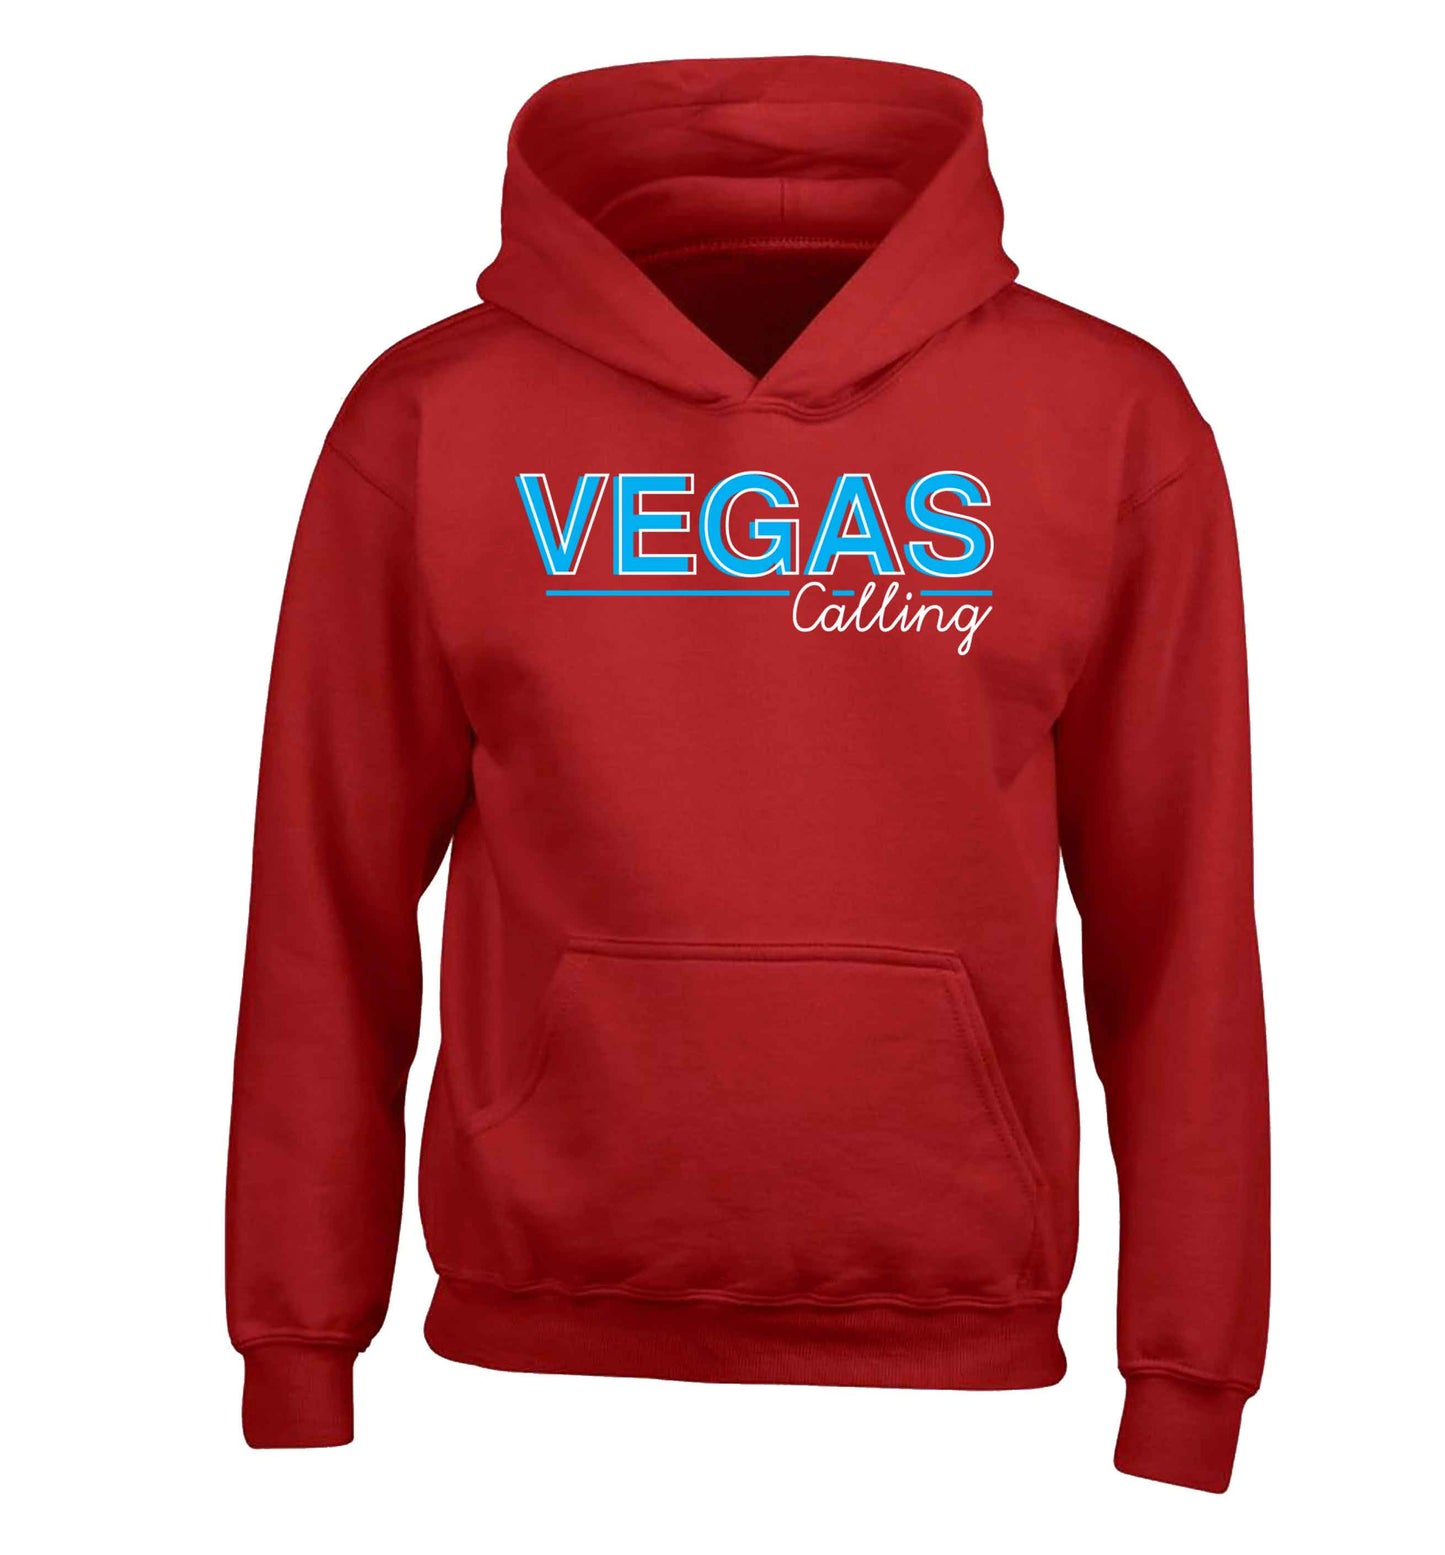 Vegas calling children's red hoodie 12-13 Years